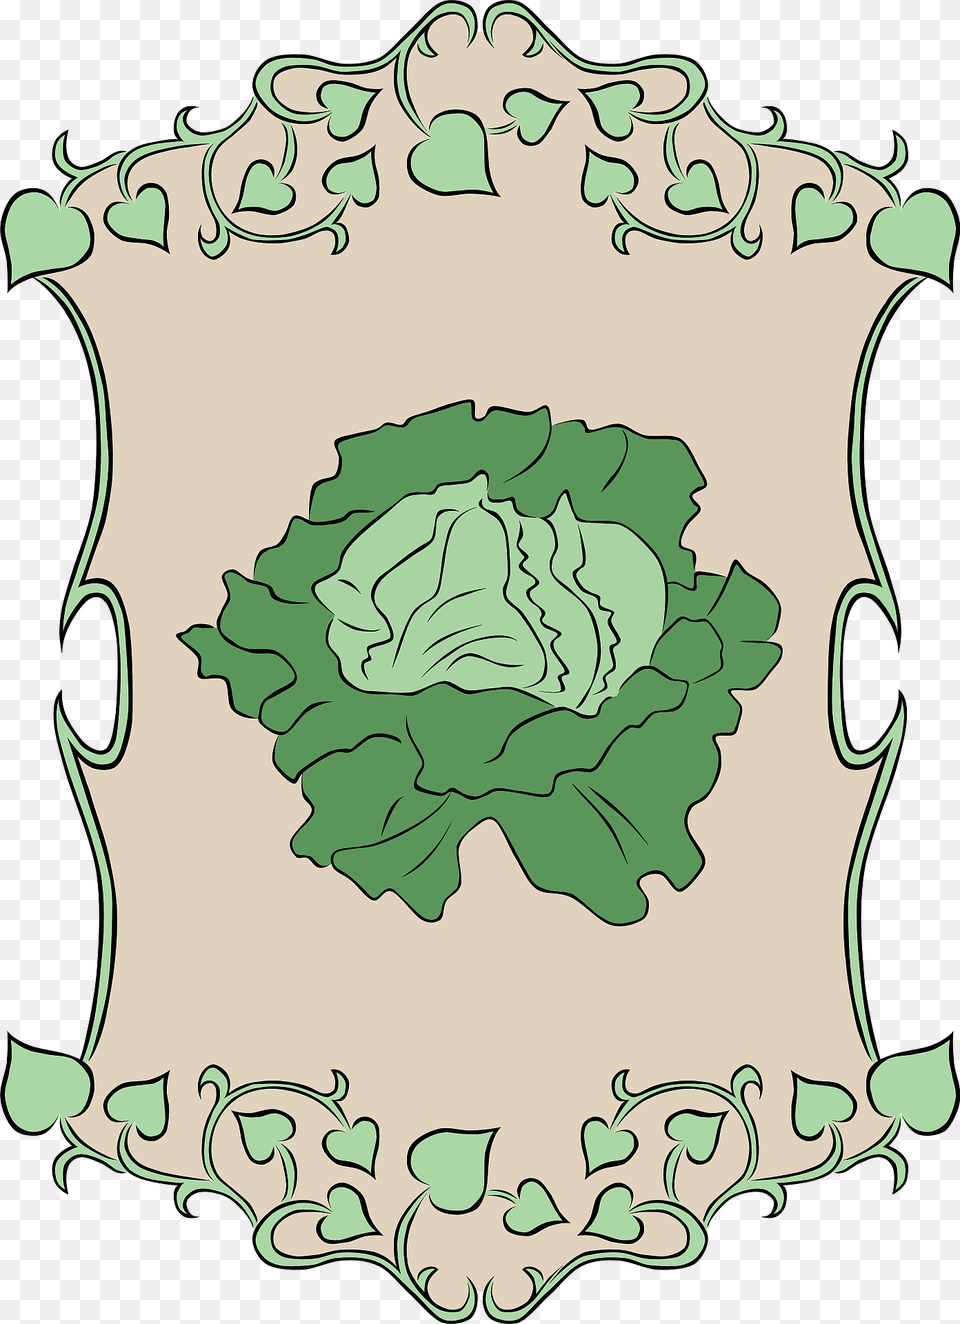 Garden Sign Lettuce Clipart, Plant, Food, Vegetable, Leafy Green Vegetable Png Image